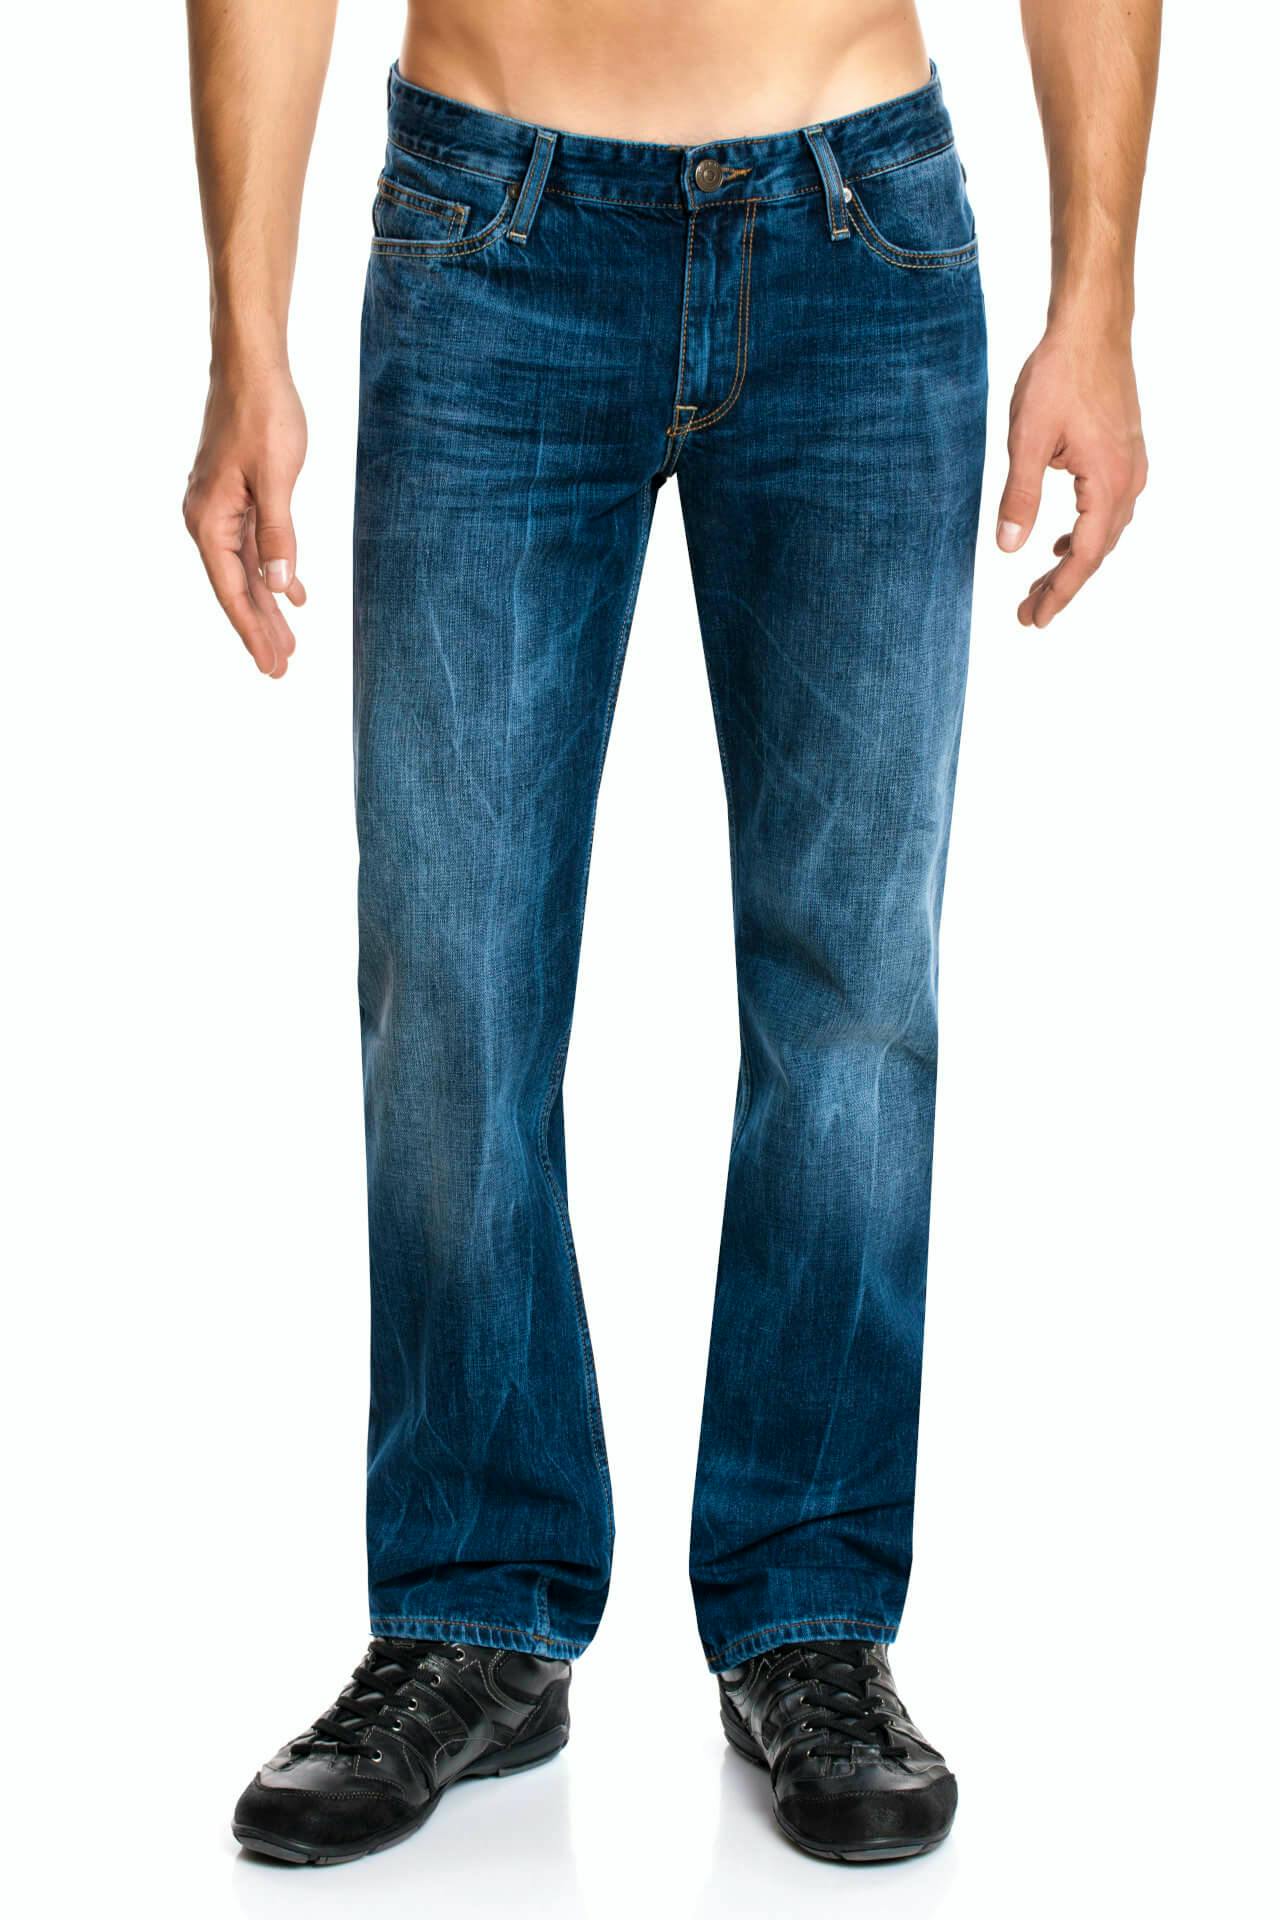 Image of Cross Jeans New Antonio